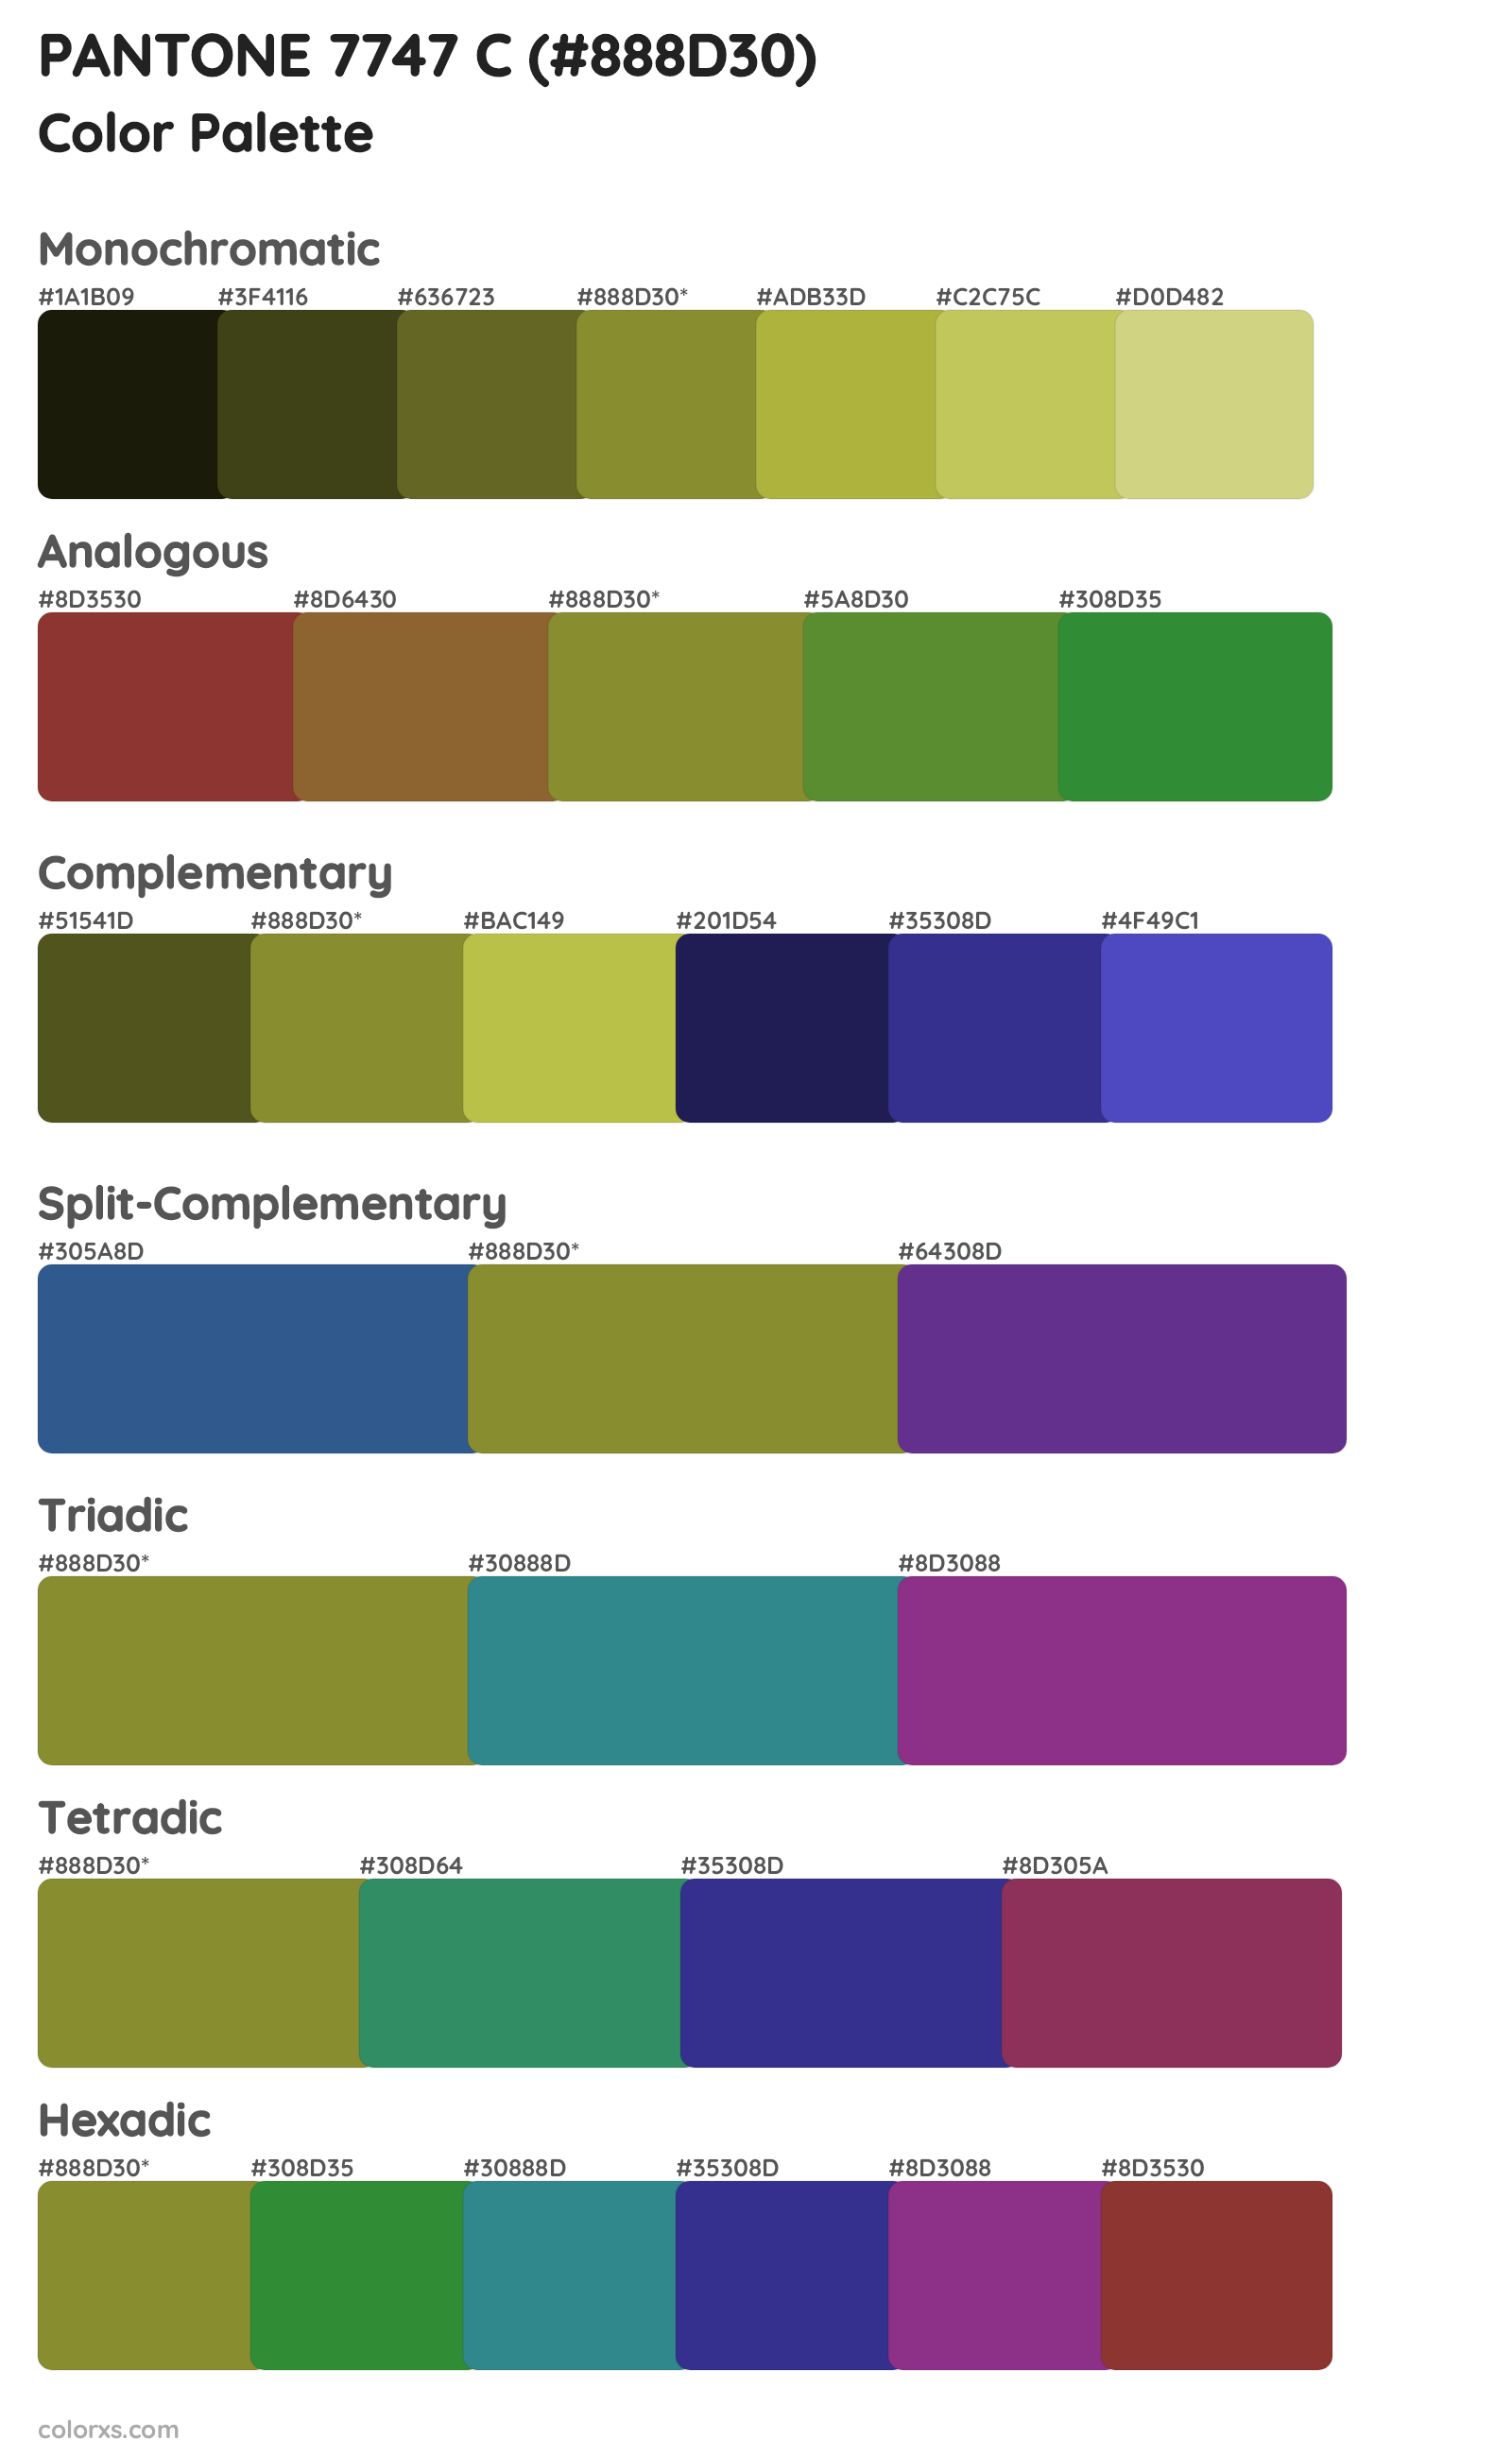 PANTONE 7747 C Color Scheme Palettes